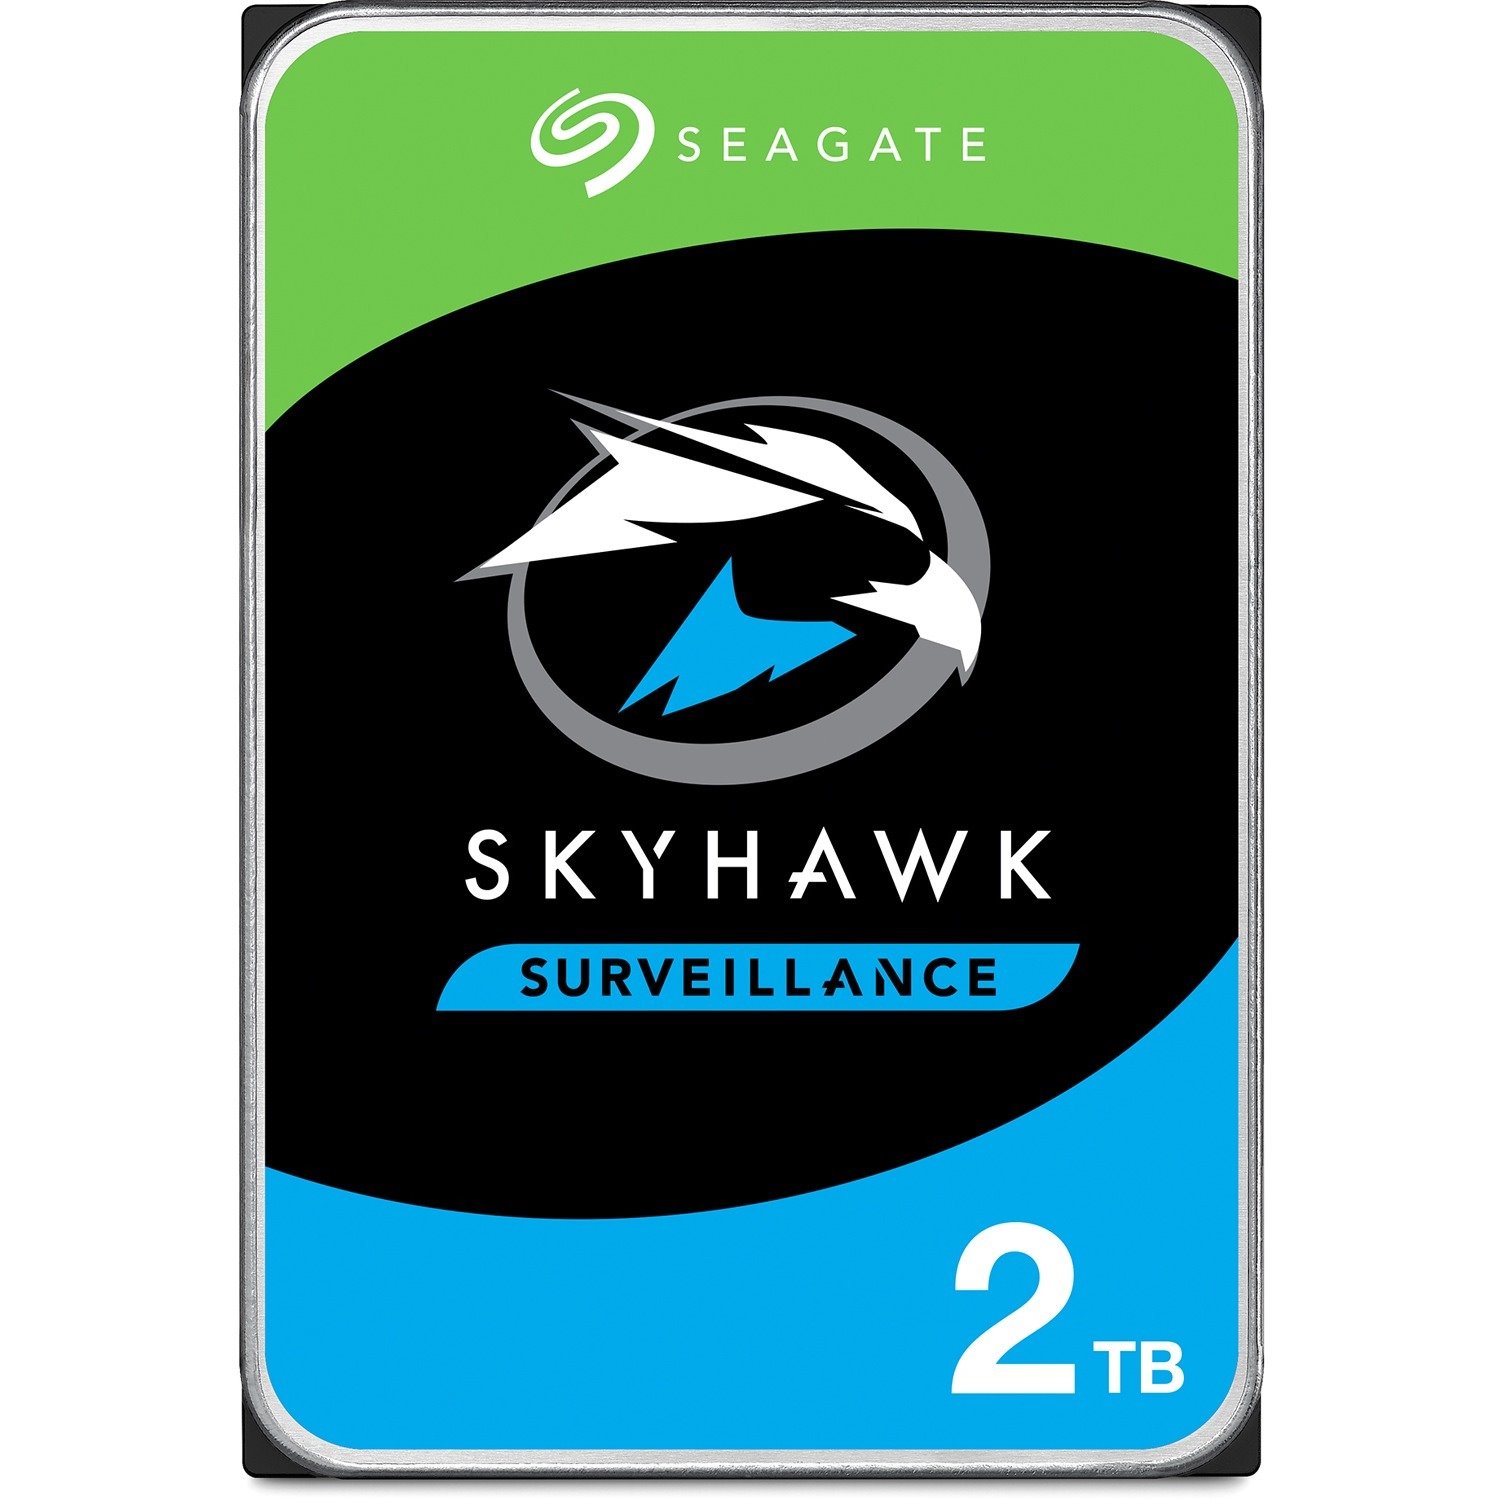 Seagate SkyHawk ST2000VX015 2 TB Hard Drive - 3.5" Internal - SATA (SATA/600)